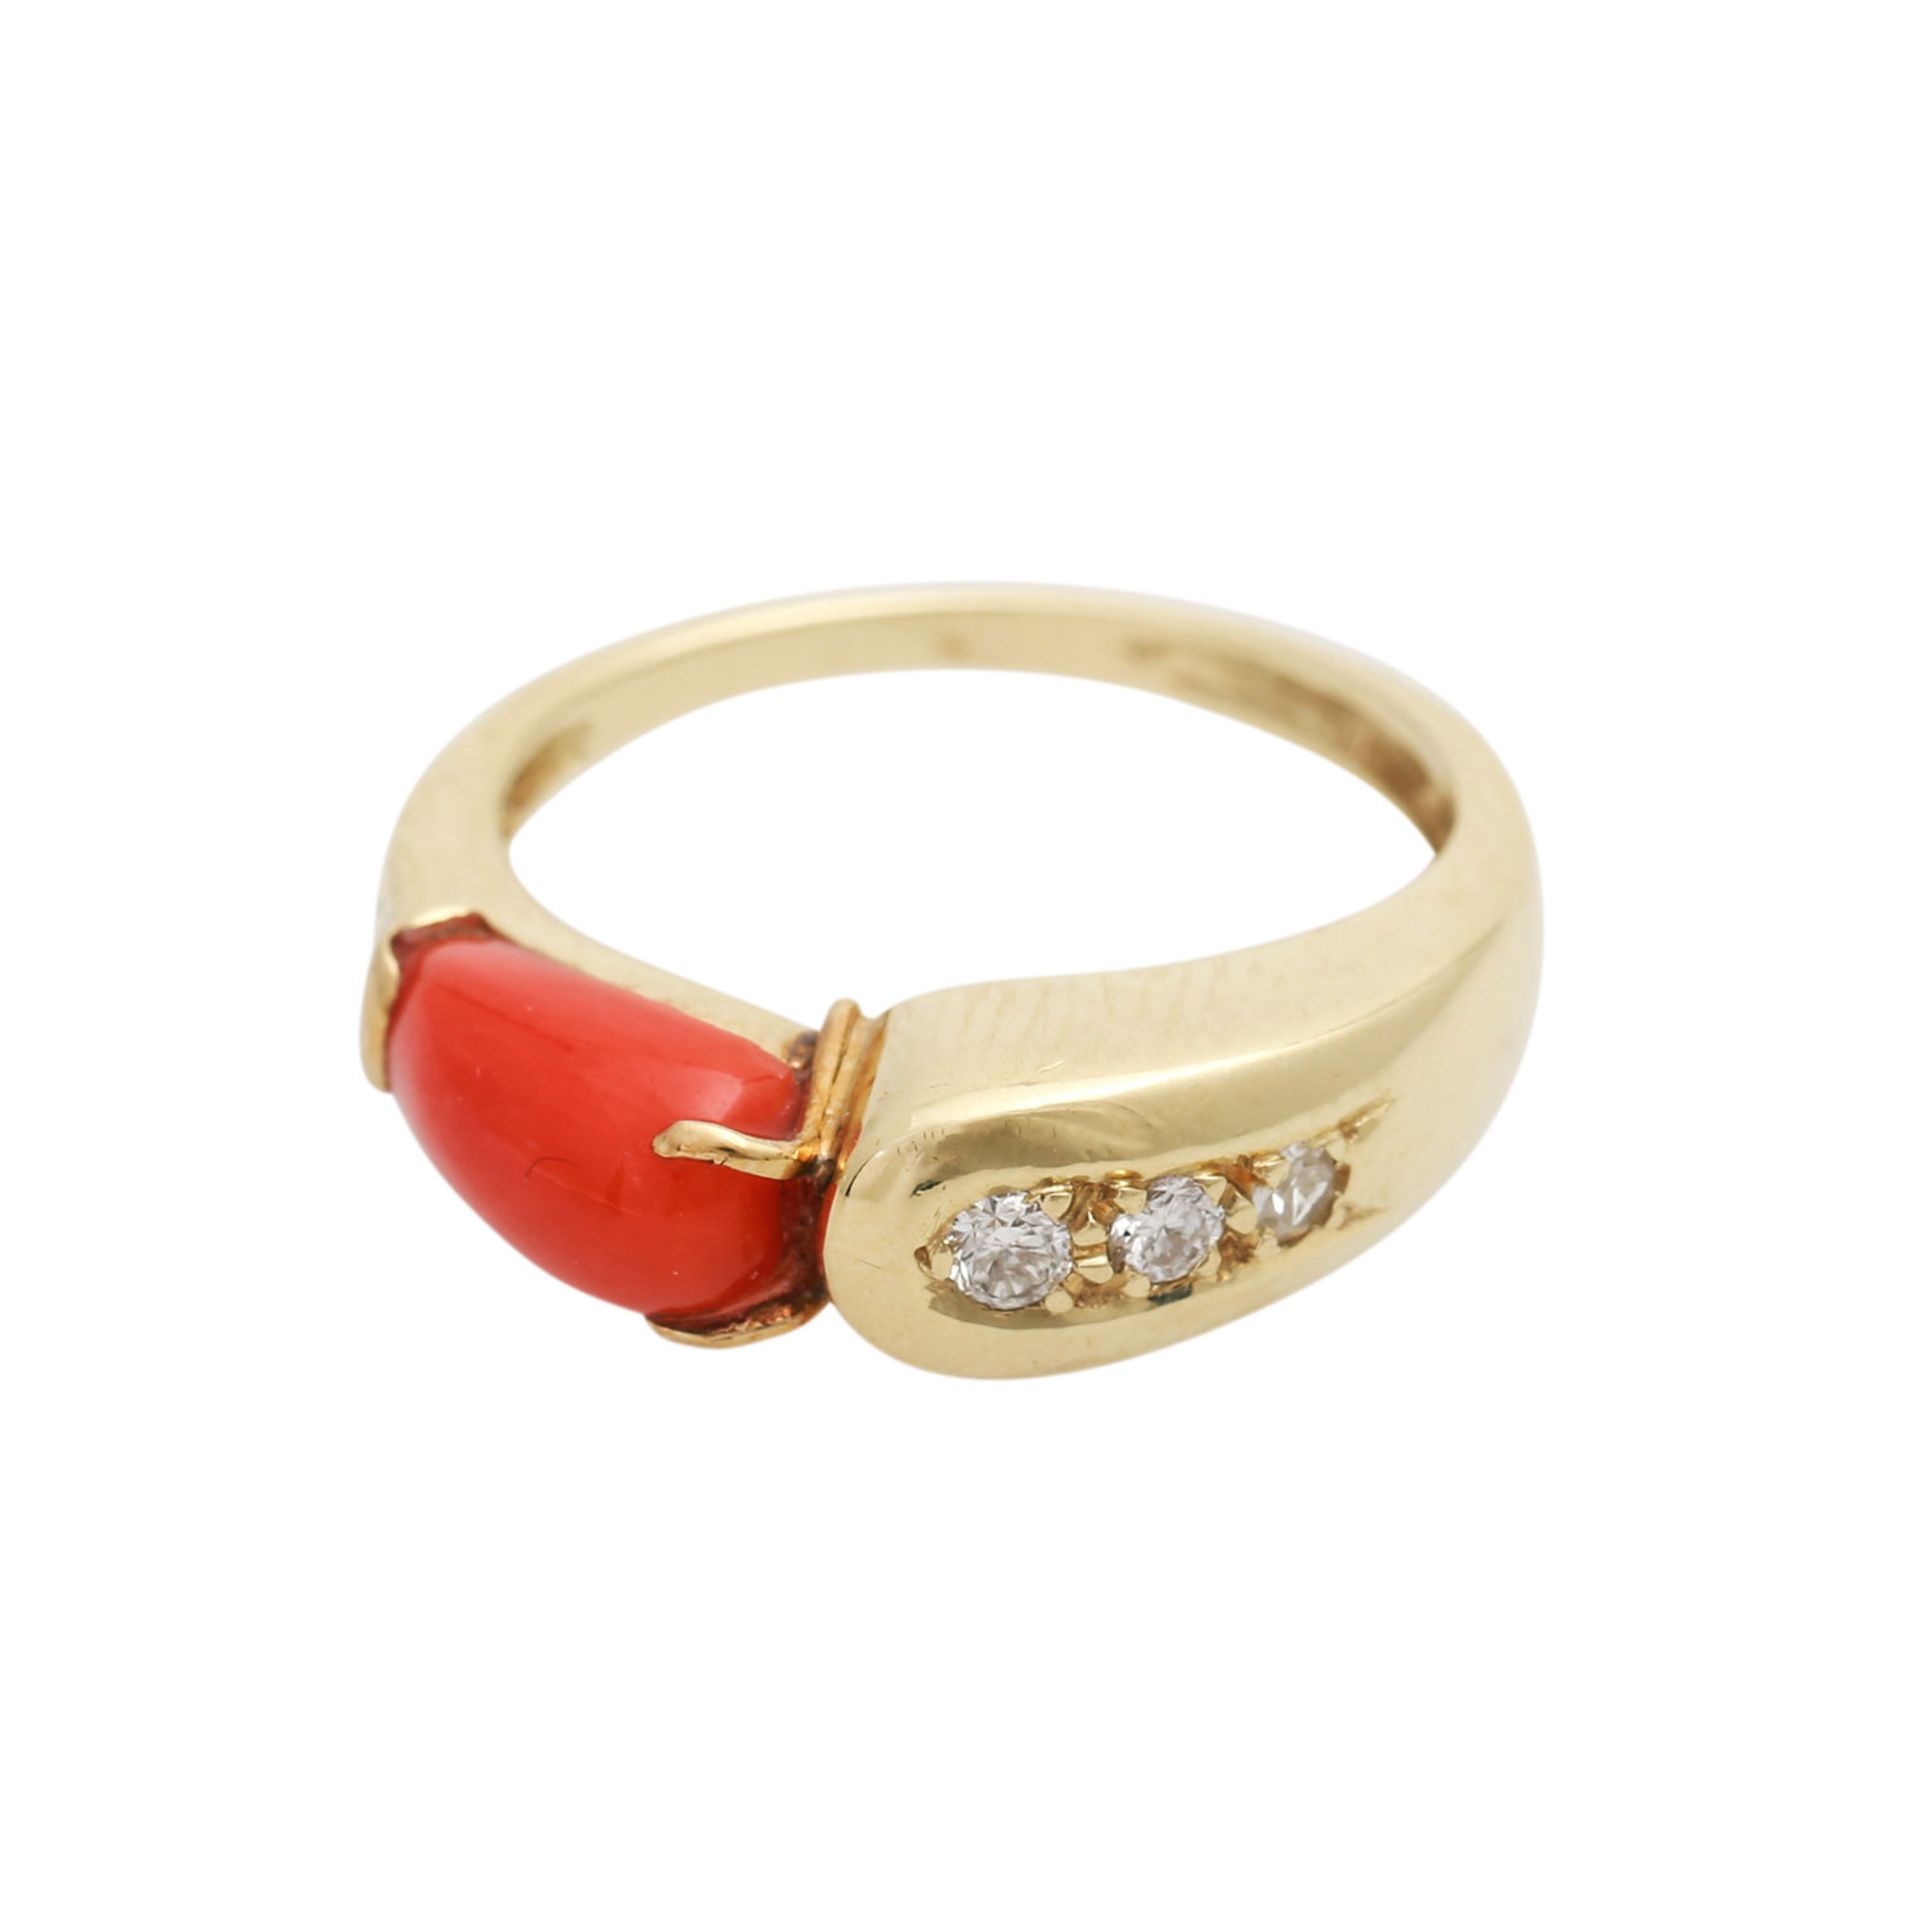 Schmuckset Ring und Ohrringe mit Koralleund kleinen Diamanten von zus. ca. 0,08 ct, Ring GG 14K, - Image 3 of 3